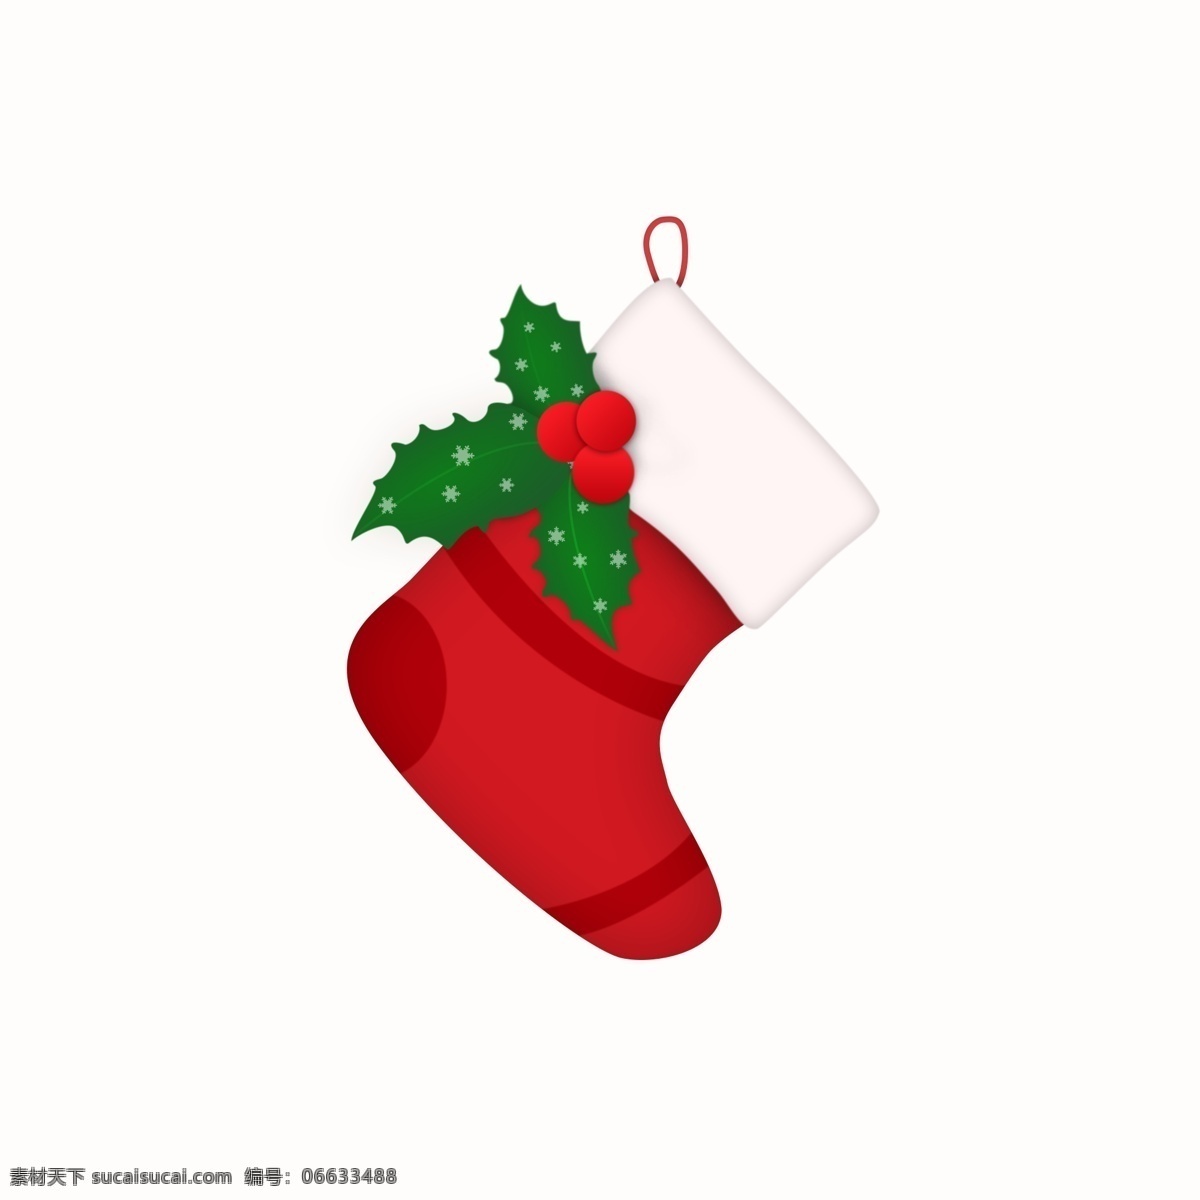 带 雪花 可爱 圣诞 袜子 圣诞节 装饰 挂件 圣诞袜子 圣诞装饰 圣诞元素 圣诞素材 圣诞袜 圣诞挂件 雪花圣诞袜 圣诞果 可爱圣诞袜 圣诞装饰品